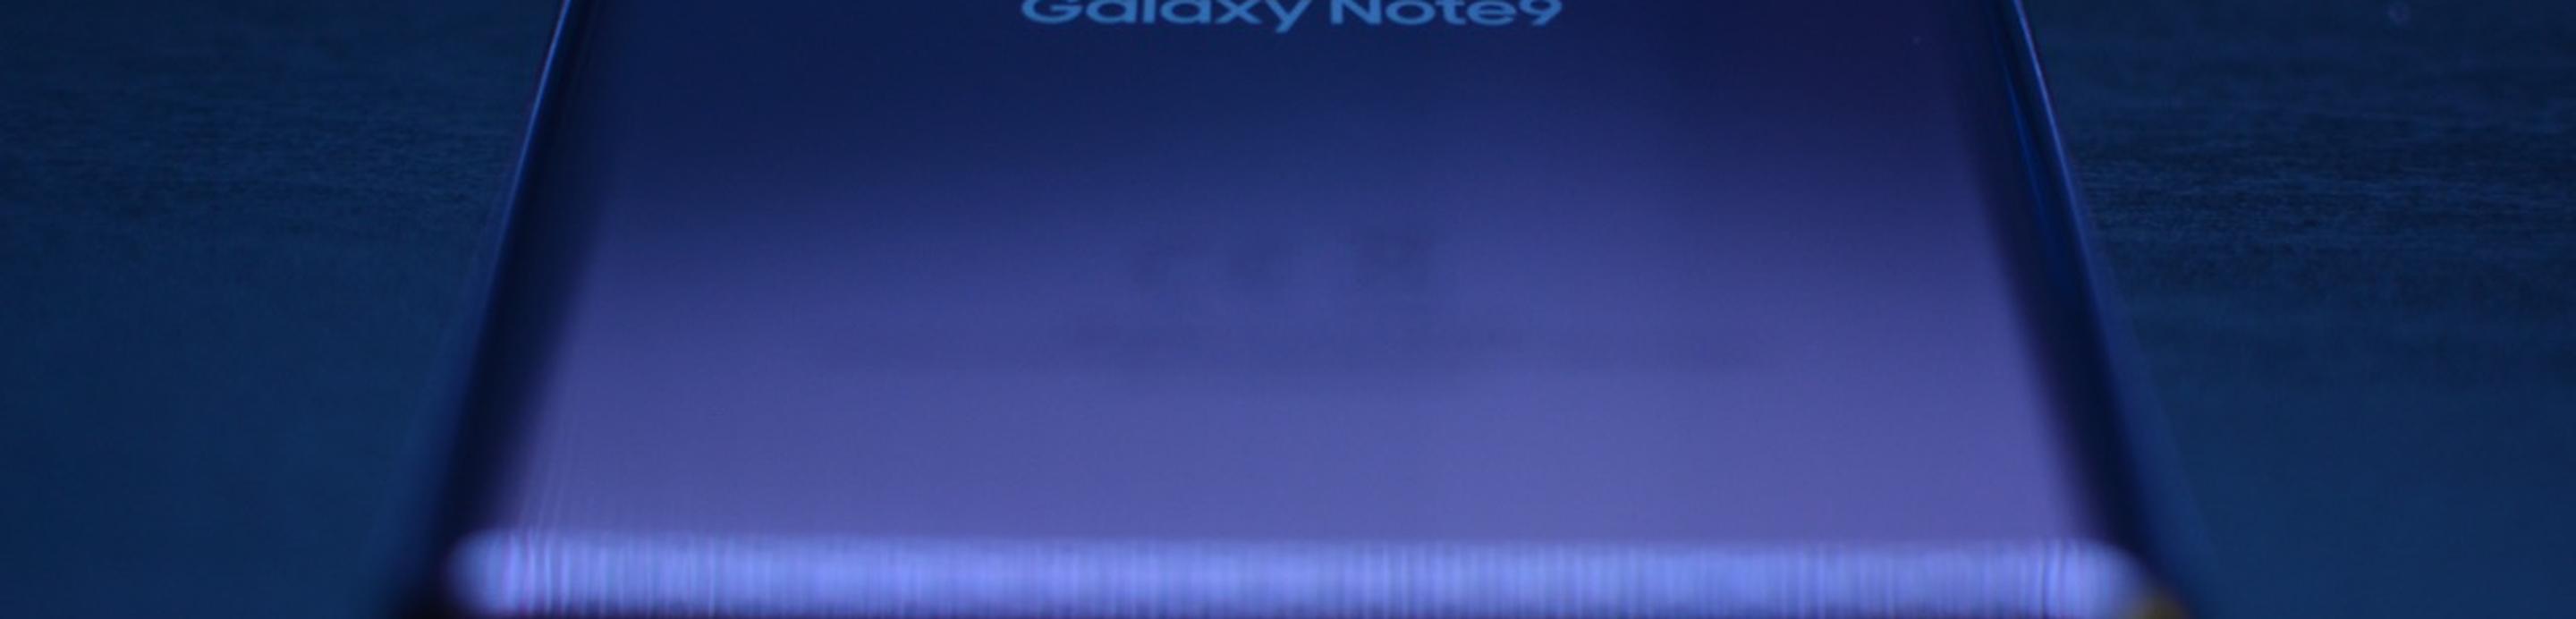 Samsung Galaxy Note 9 reacondicionados